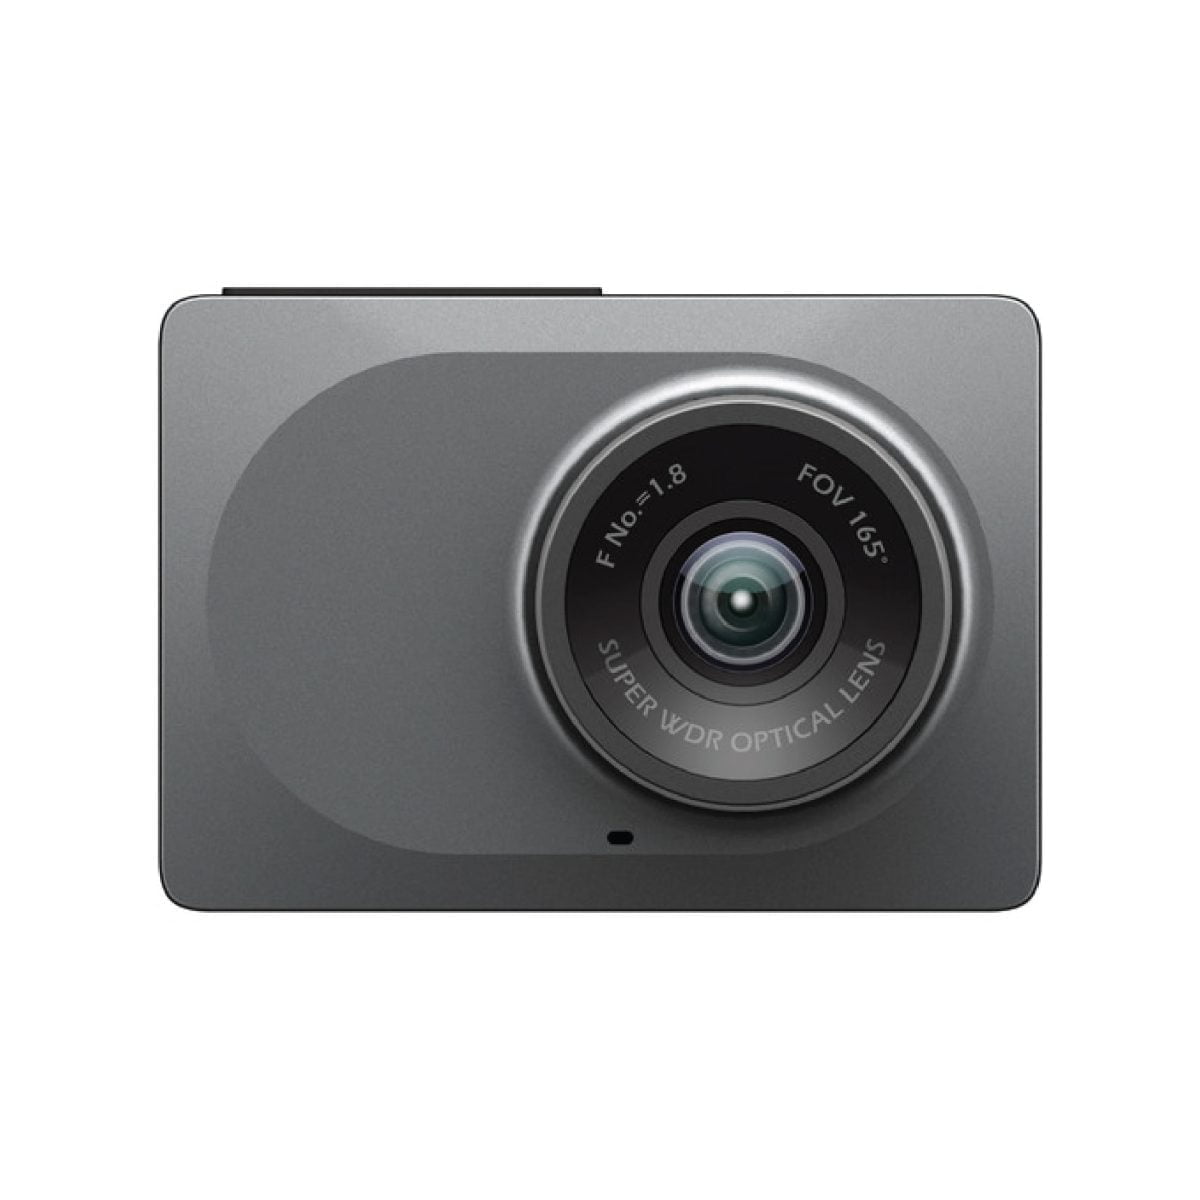 Yi Camera 07 Xiaomi &Lt;H1&Gt;Yi - Compact Dash Cam Car Dashboard Camera With 2.7” Screen, 130° Wdr Lens, G-Sensor, Loop Recording&Lt;/H1&Gt; 1080P60 Full Hd 165 Wide Angle Front Dashboard Camera Car Dvr Vehicle Recorder With Adas, G-Sensor, Phone App, Wdr, Loop Recording - Grey Https://Youtu.be/Tsowlpdc0U4 Yi - Compact Dash Cam Car Yi - Compact Dash Cam Car Dashboard Camera With 2.7” Screen, 130° Wdr Lens, G-Sensor, Loop Recording